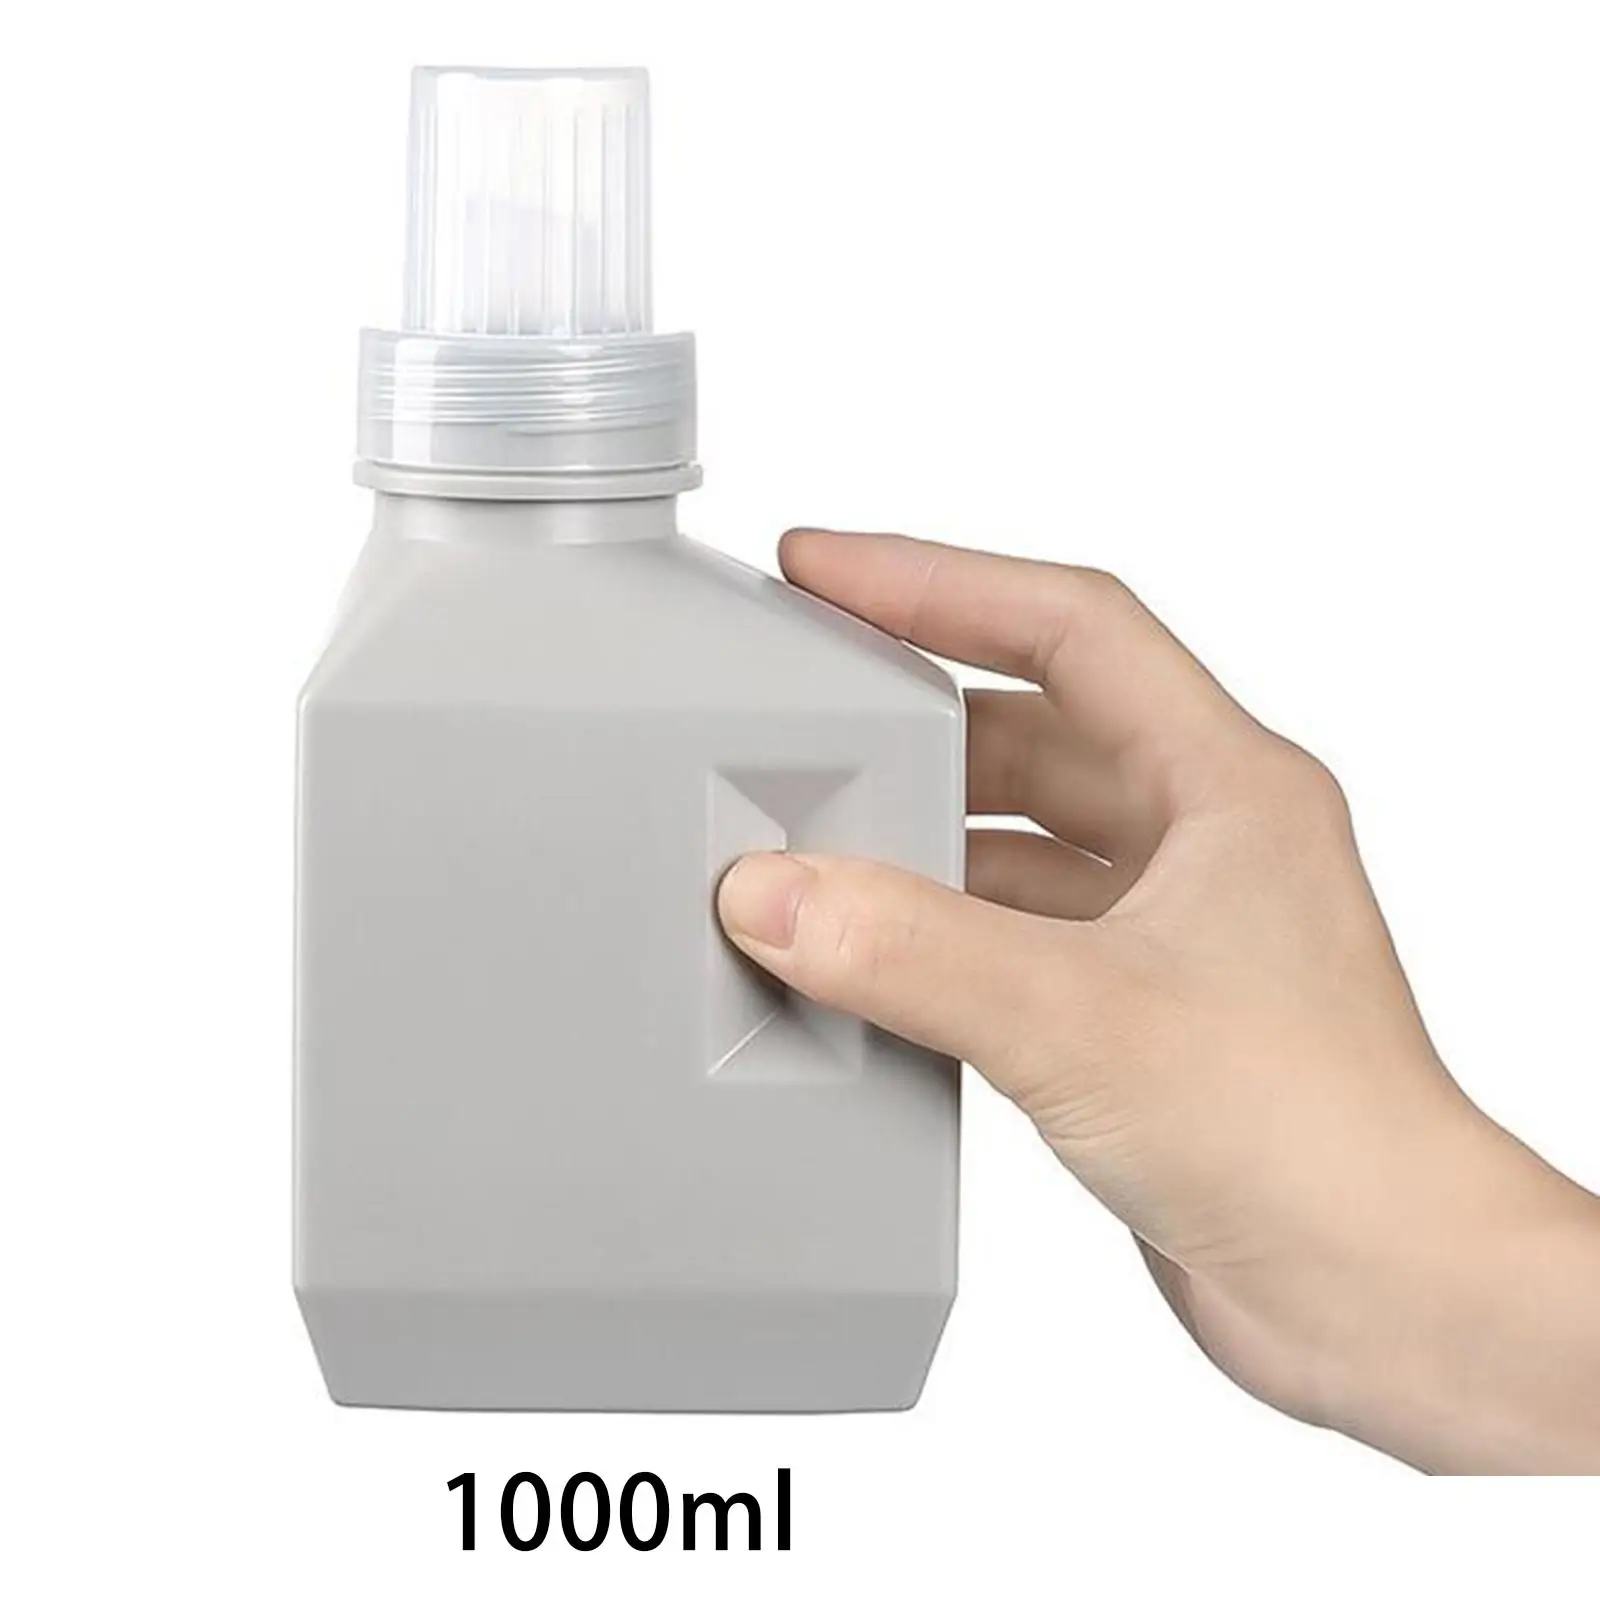 Refillable Laundry Bottle Reusable for Detergent Softener Laundry Room Decor